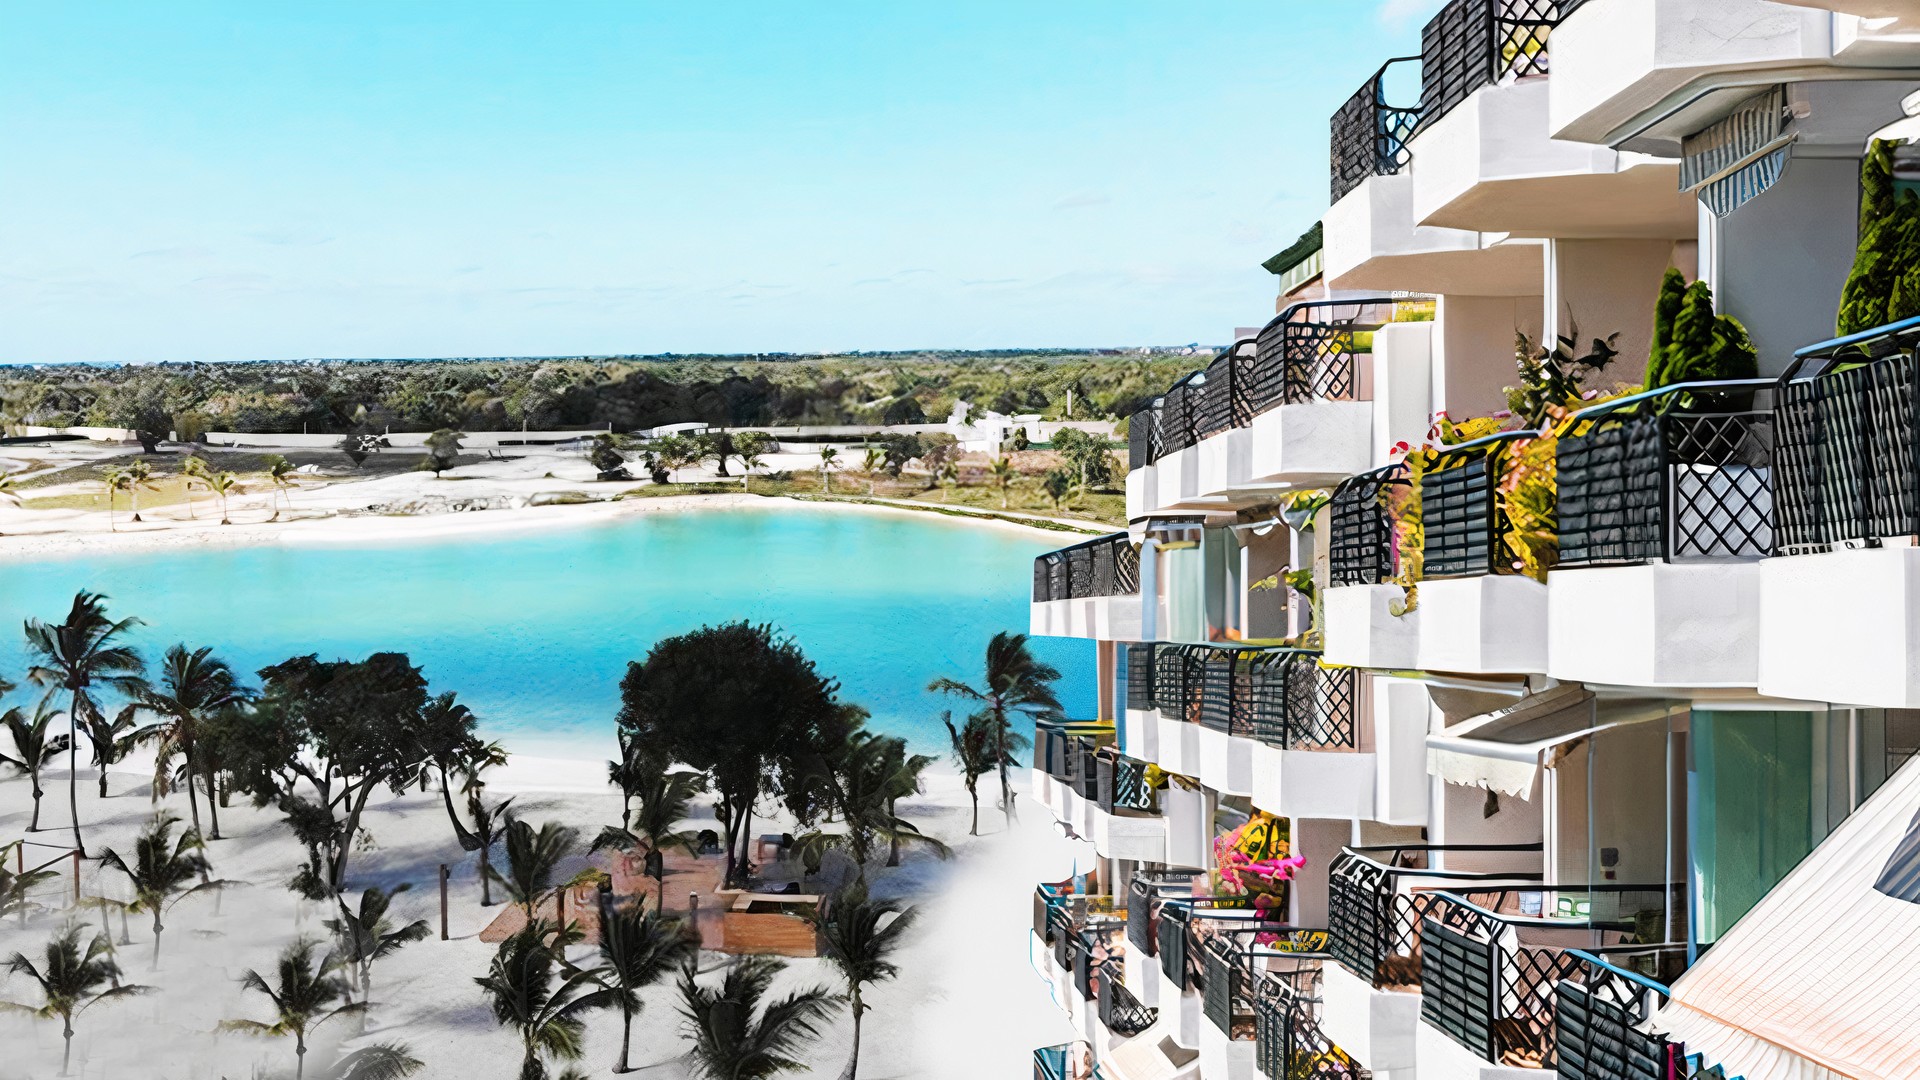 apartamentos - Venta de apartamentos de lujo en vista cana con vista a la playa  0